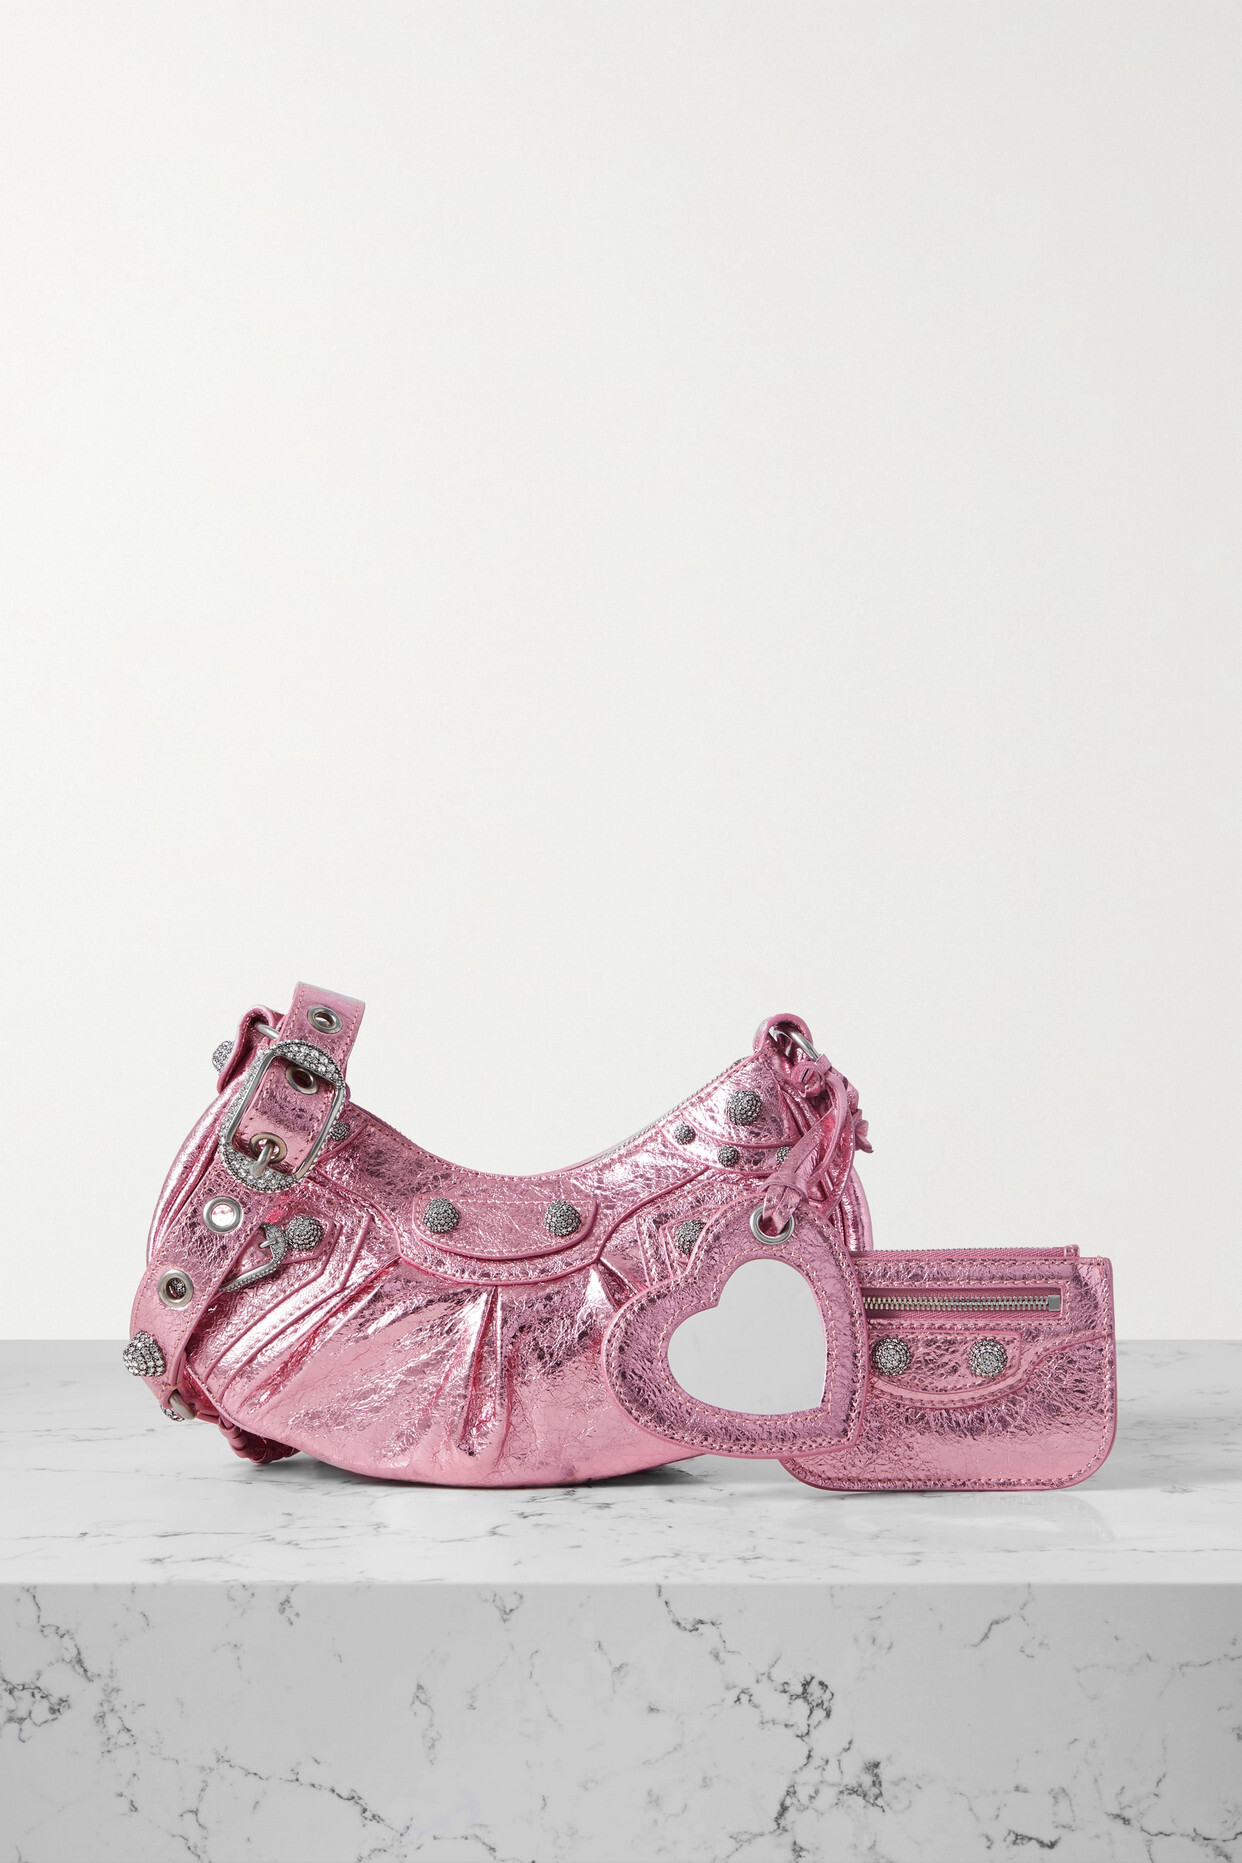 Balenciaga - Le Cagole Xs Crystal-embellished Studded Metallic Crinkled-leather Shoulder Bag - Pink